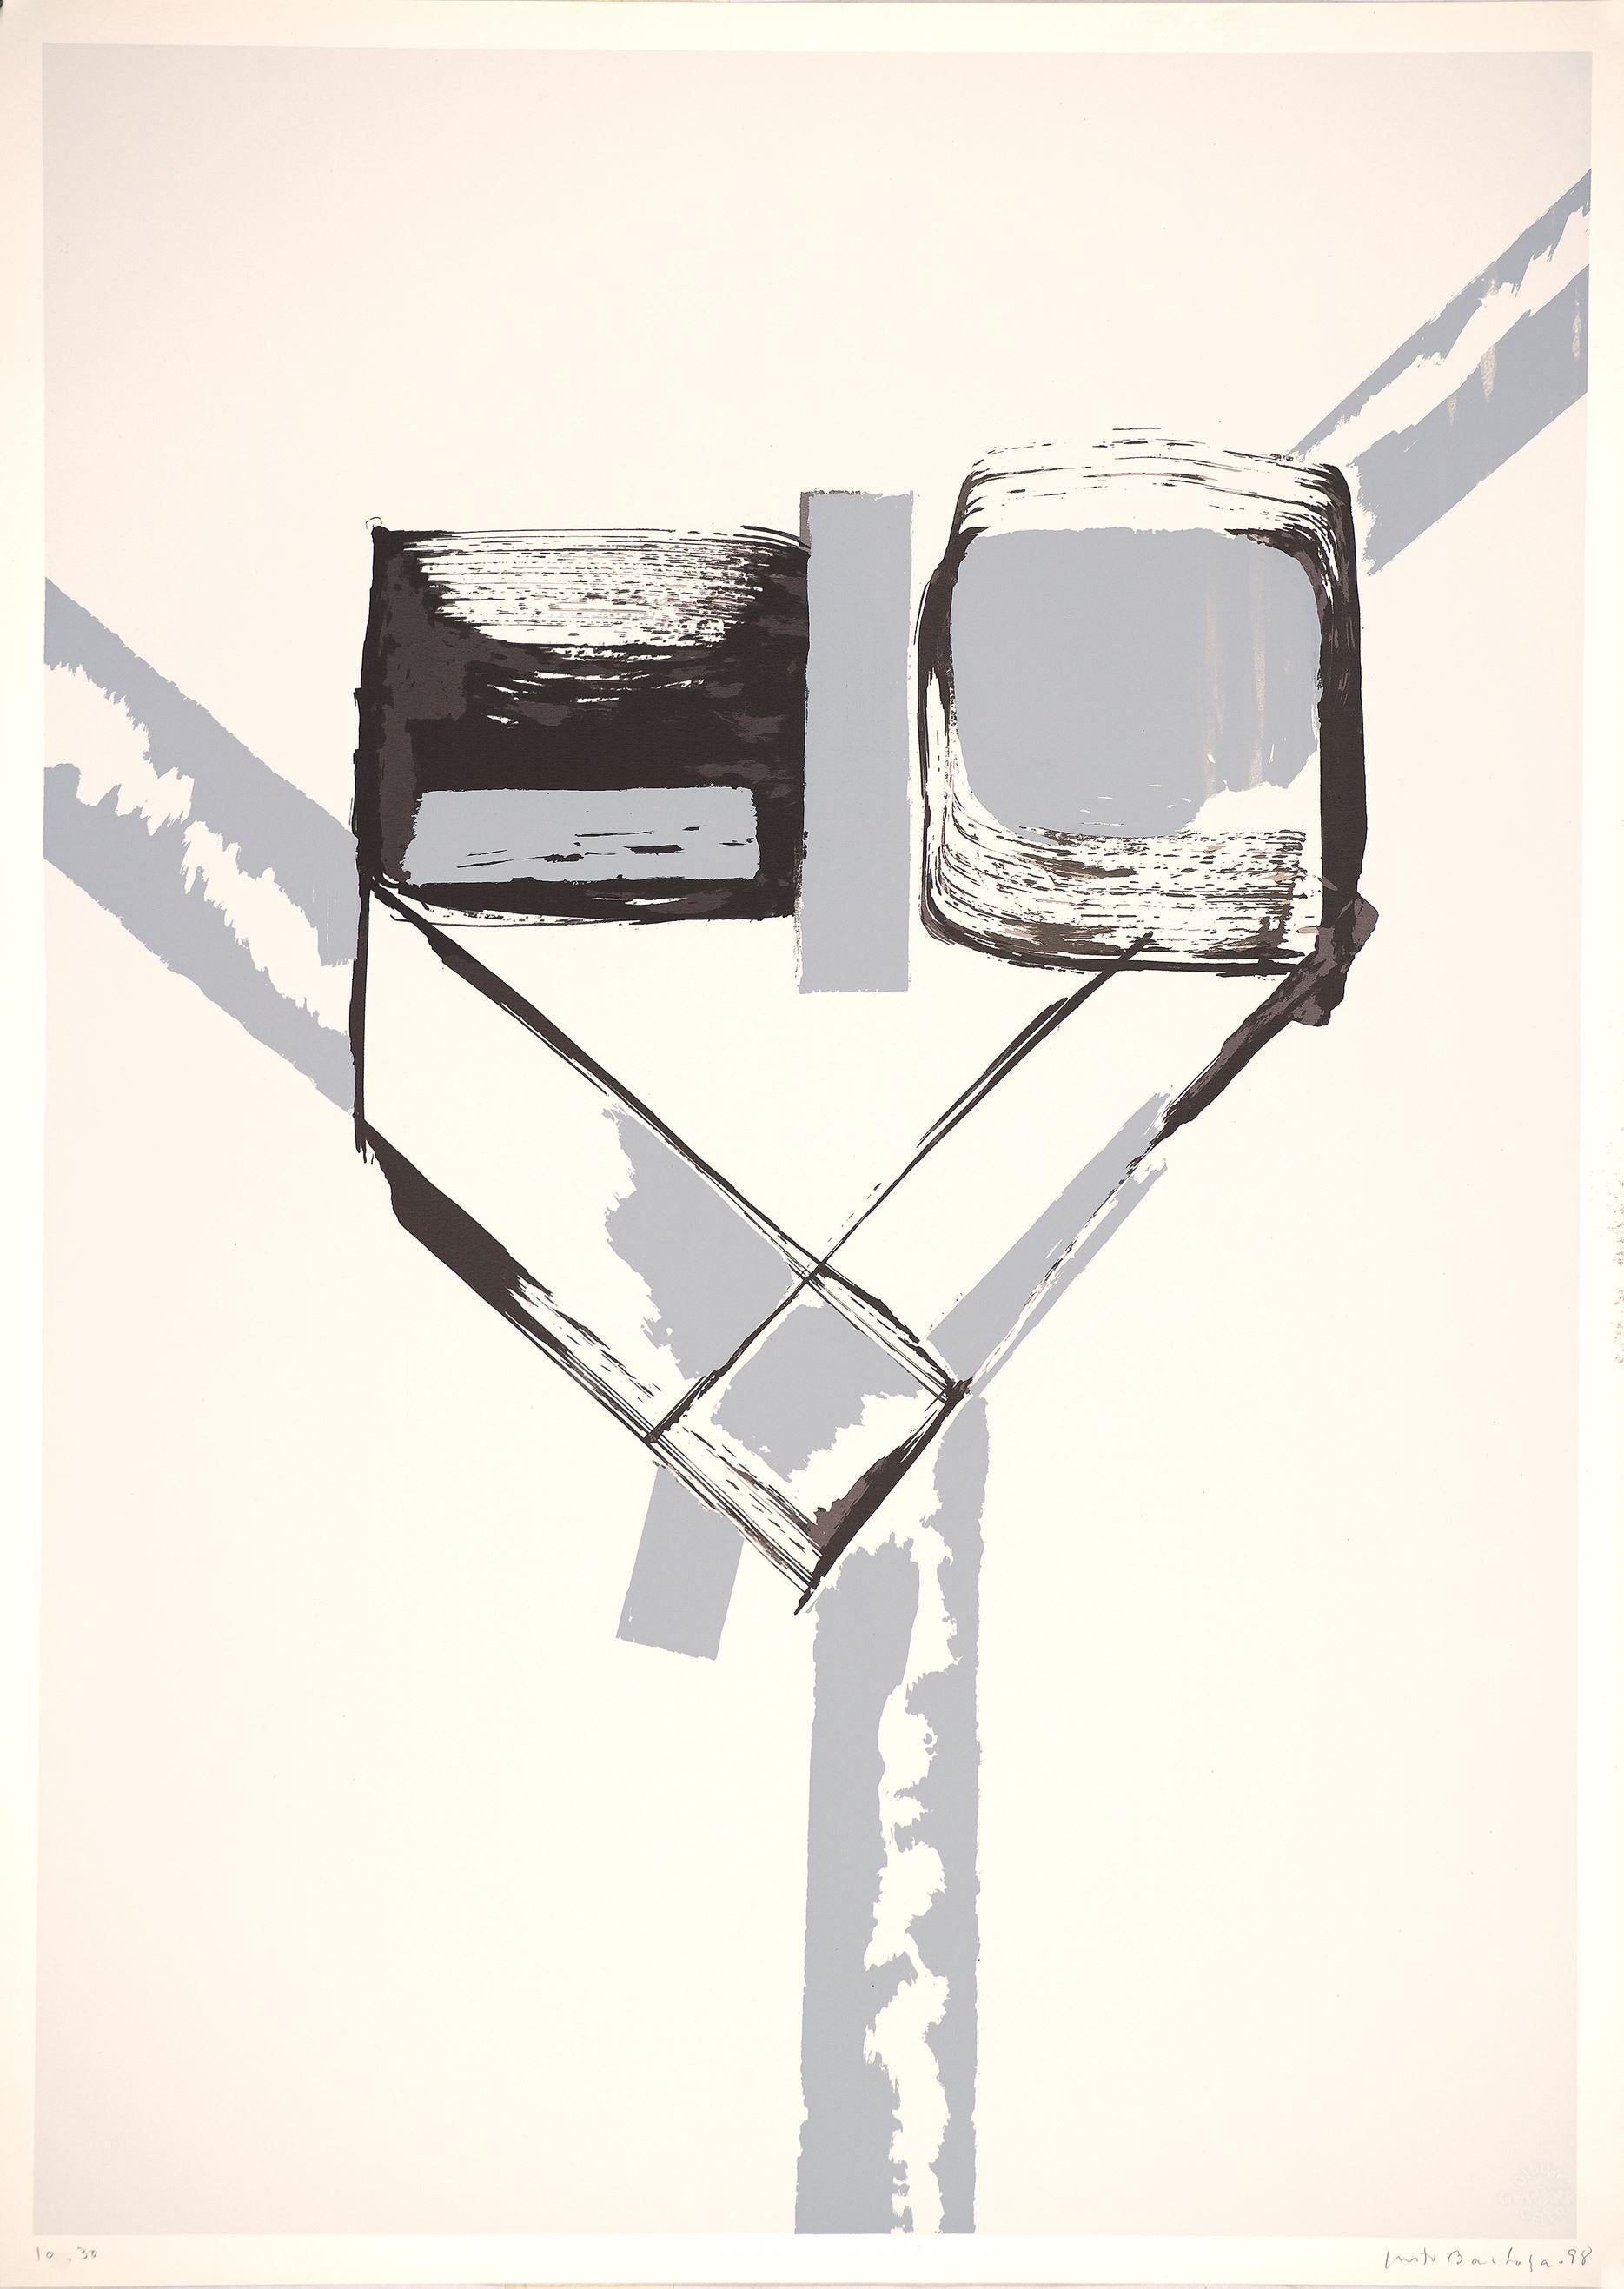 Justo Barboza (Argentinien, 1938)
Dreieckig", 1998
Siebdruck auf Papier Guarro Geler
27,6 x 19,7 Zoll (70 x 50 cm)
Auflage von 30 Stück
Ungerahmt
ID: BAR1437-001-030
Vom Autor handsigniert